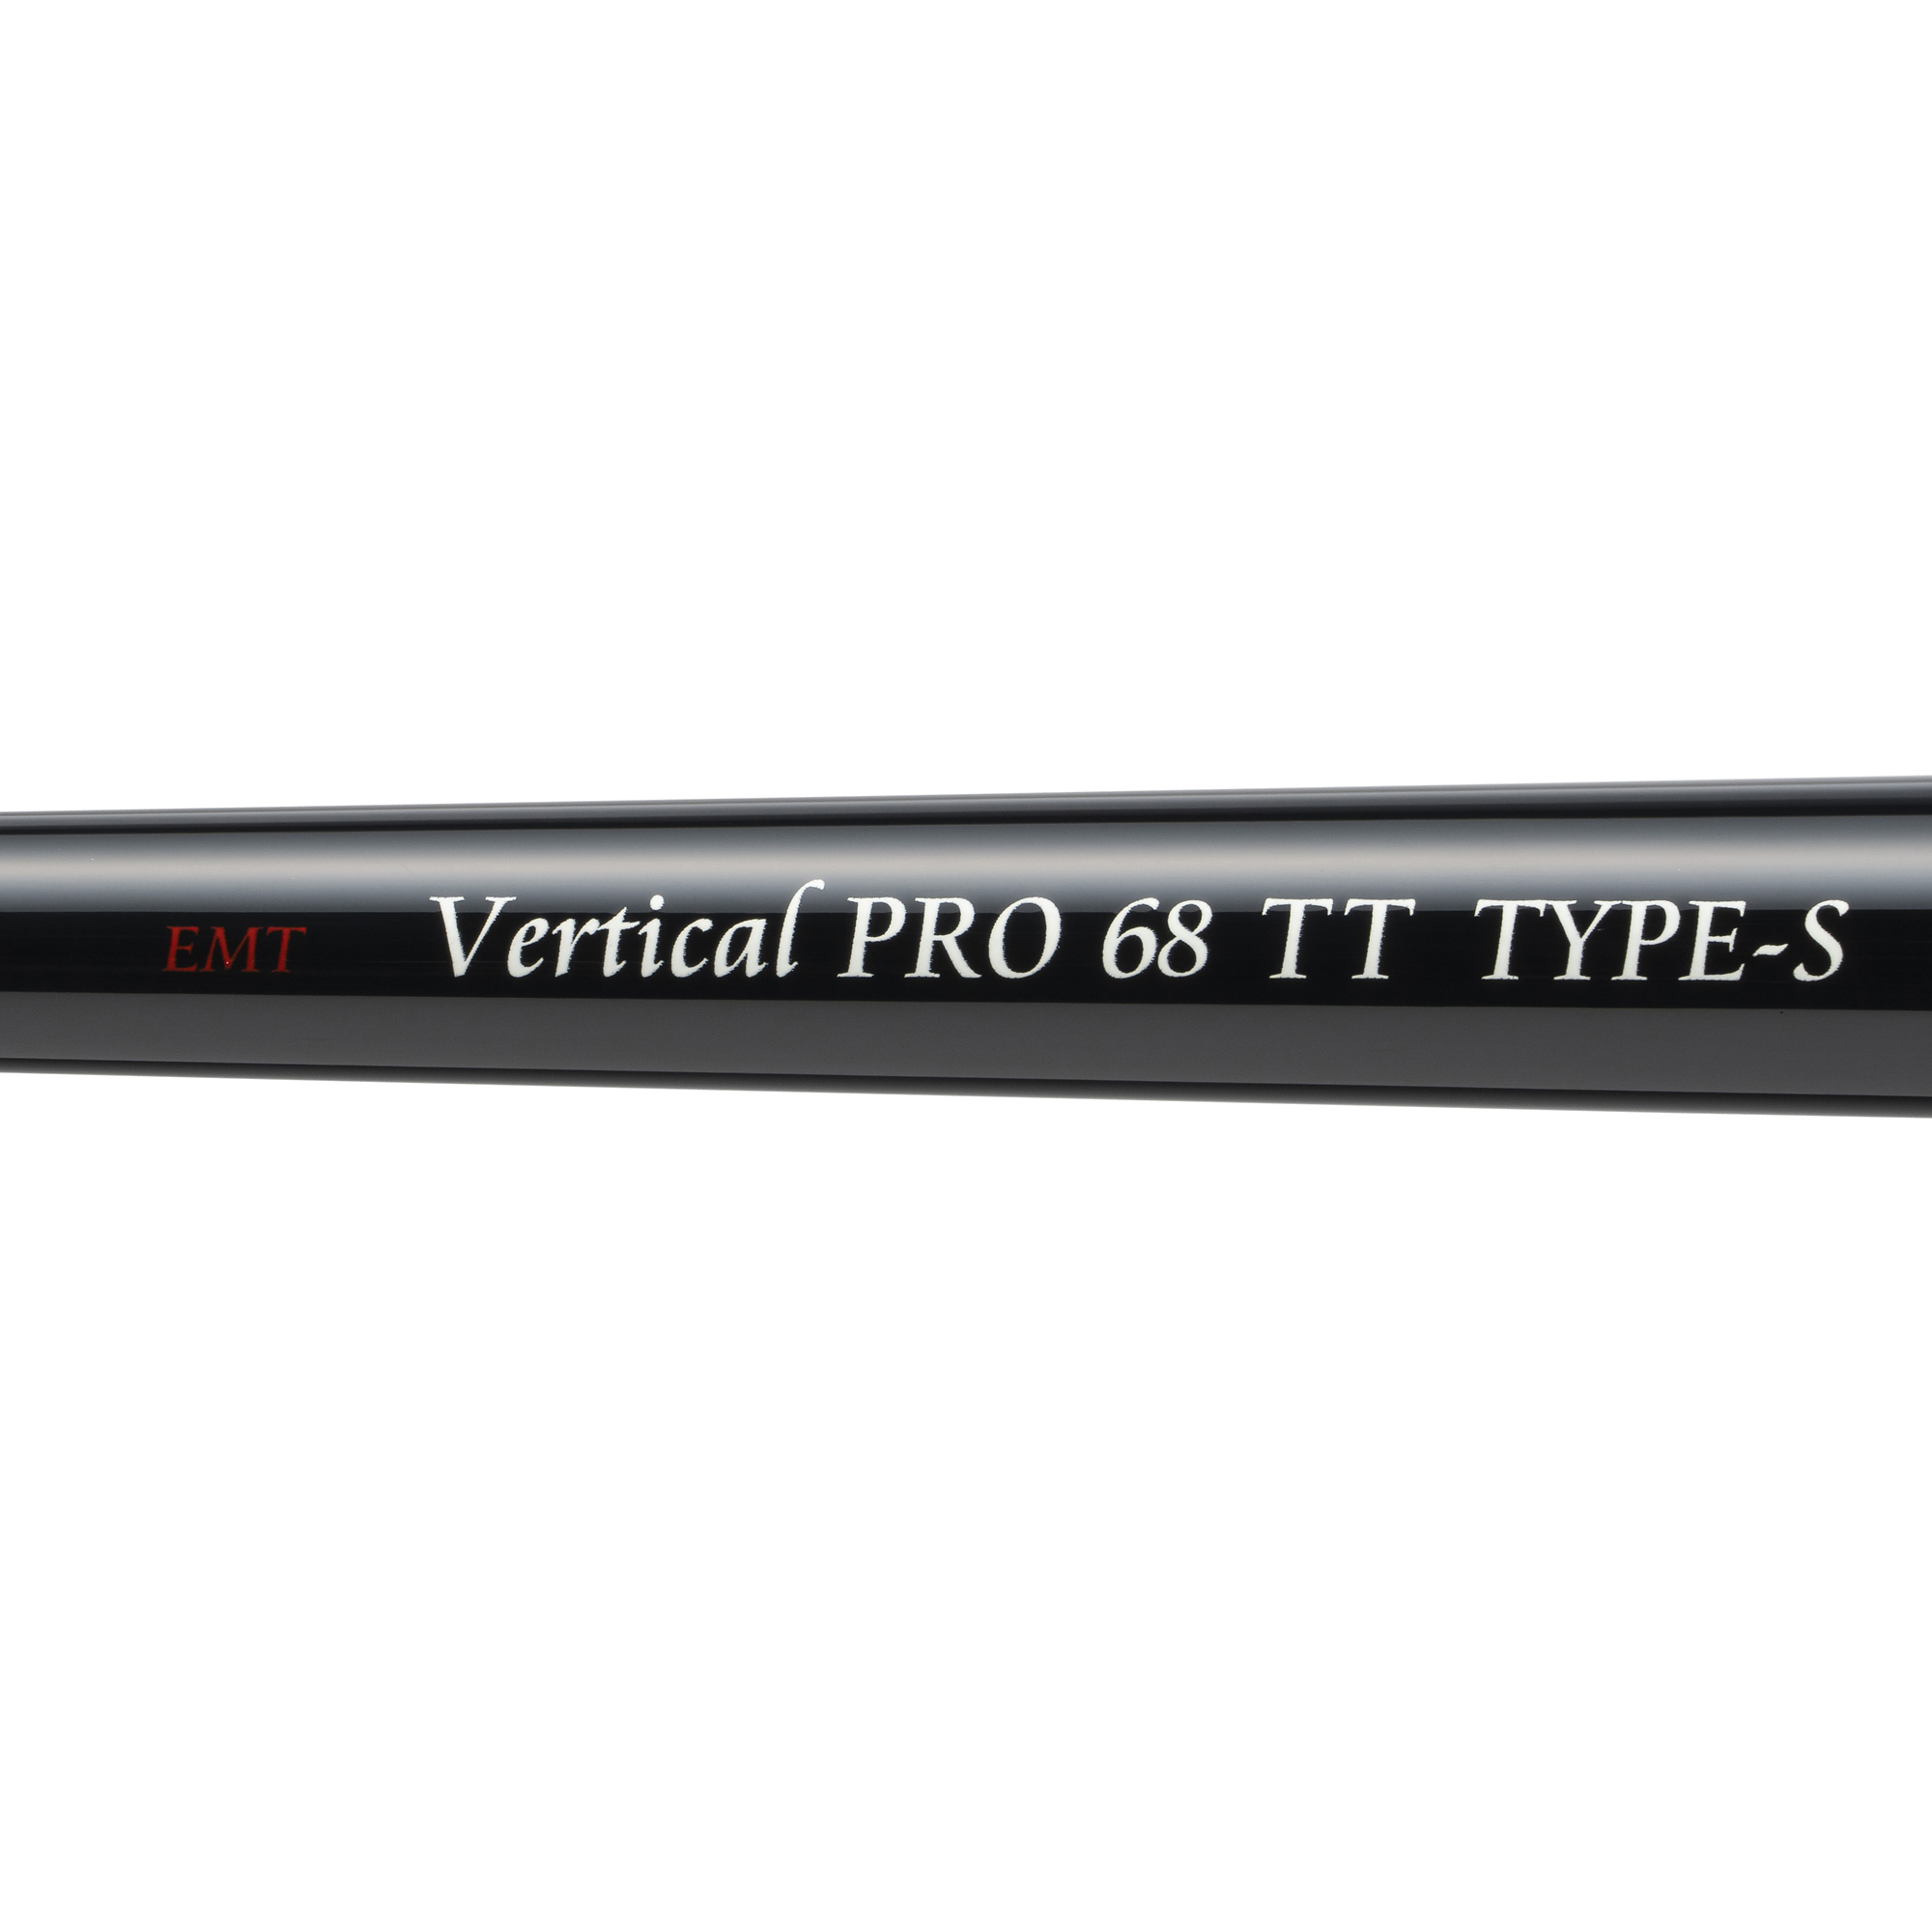 Vertical PRO 68TT TYPE-S - Vertical Pro - EMT